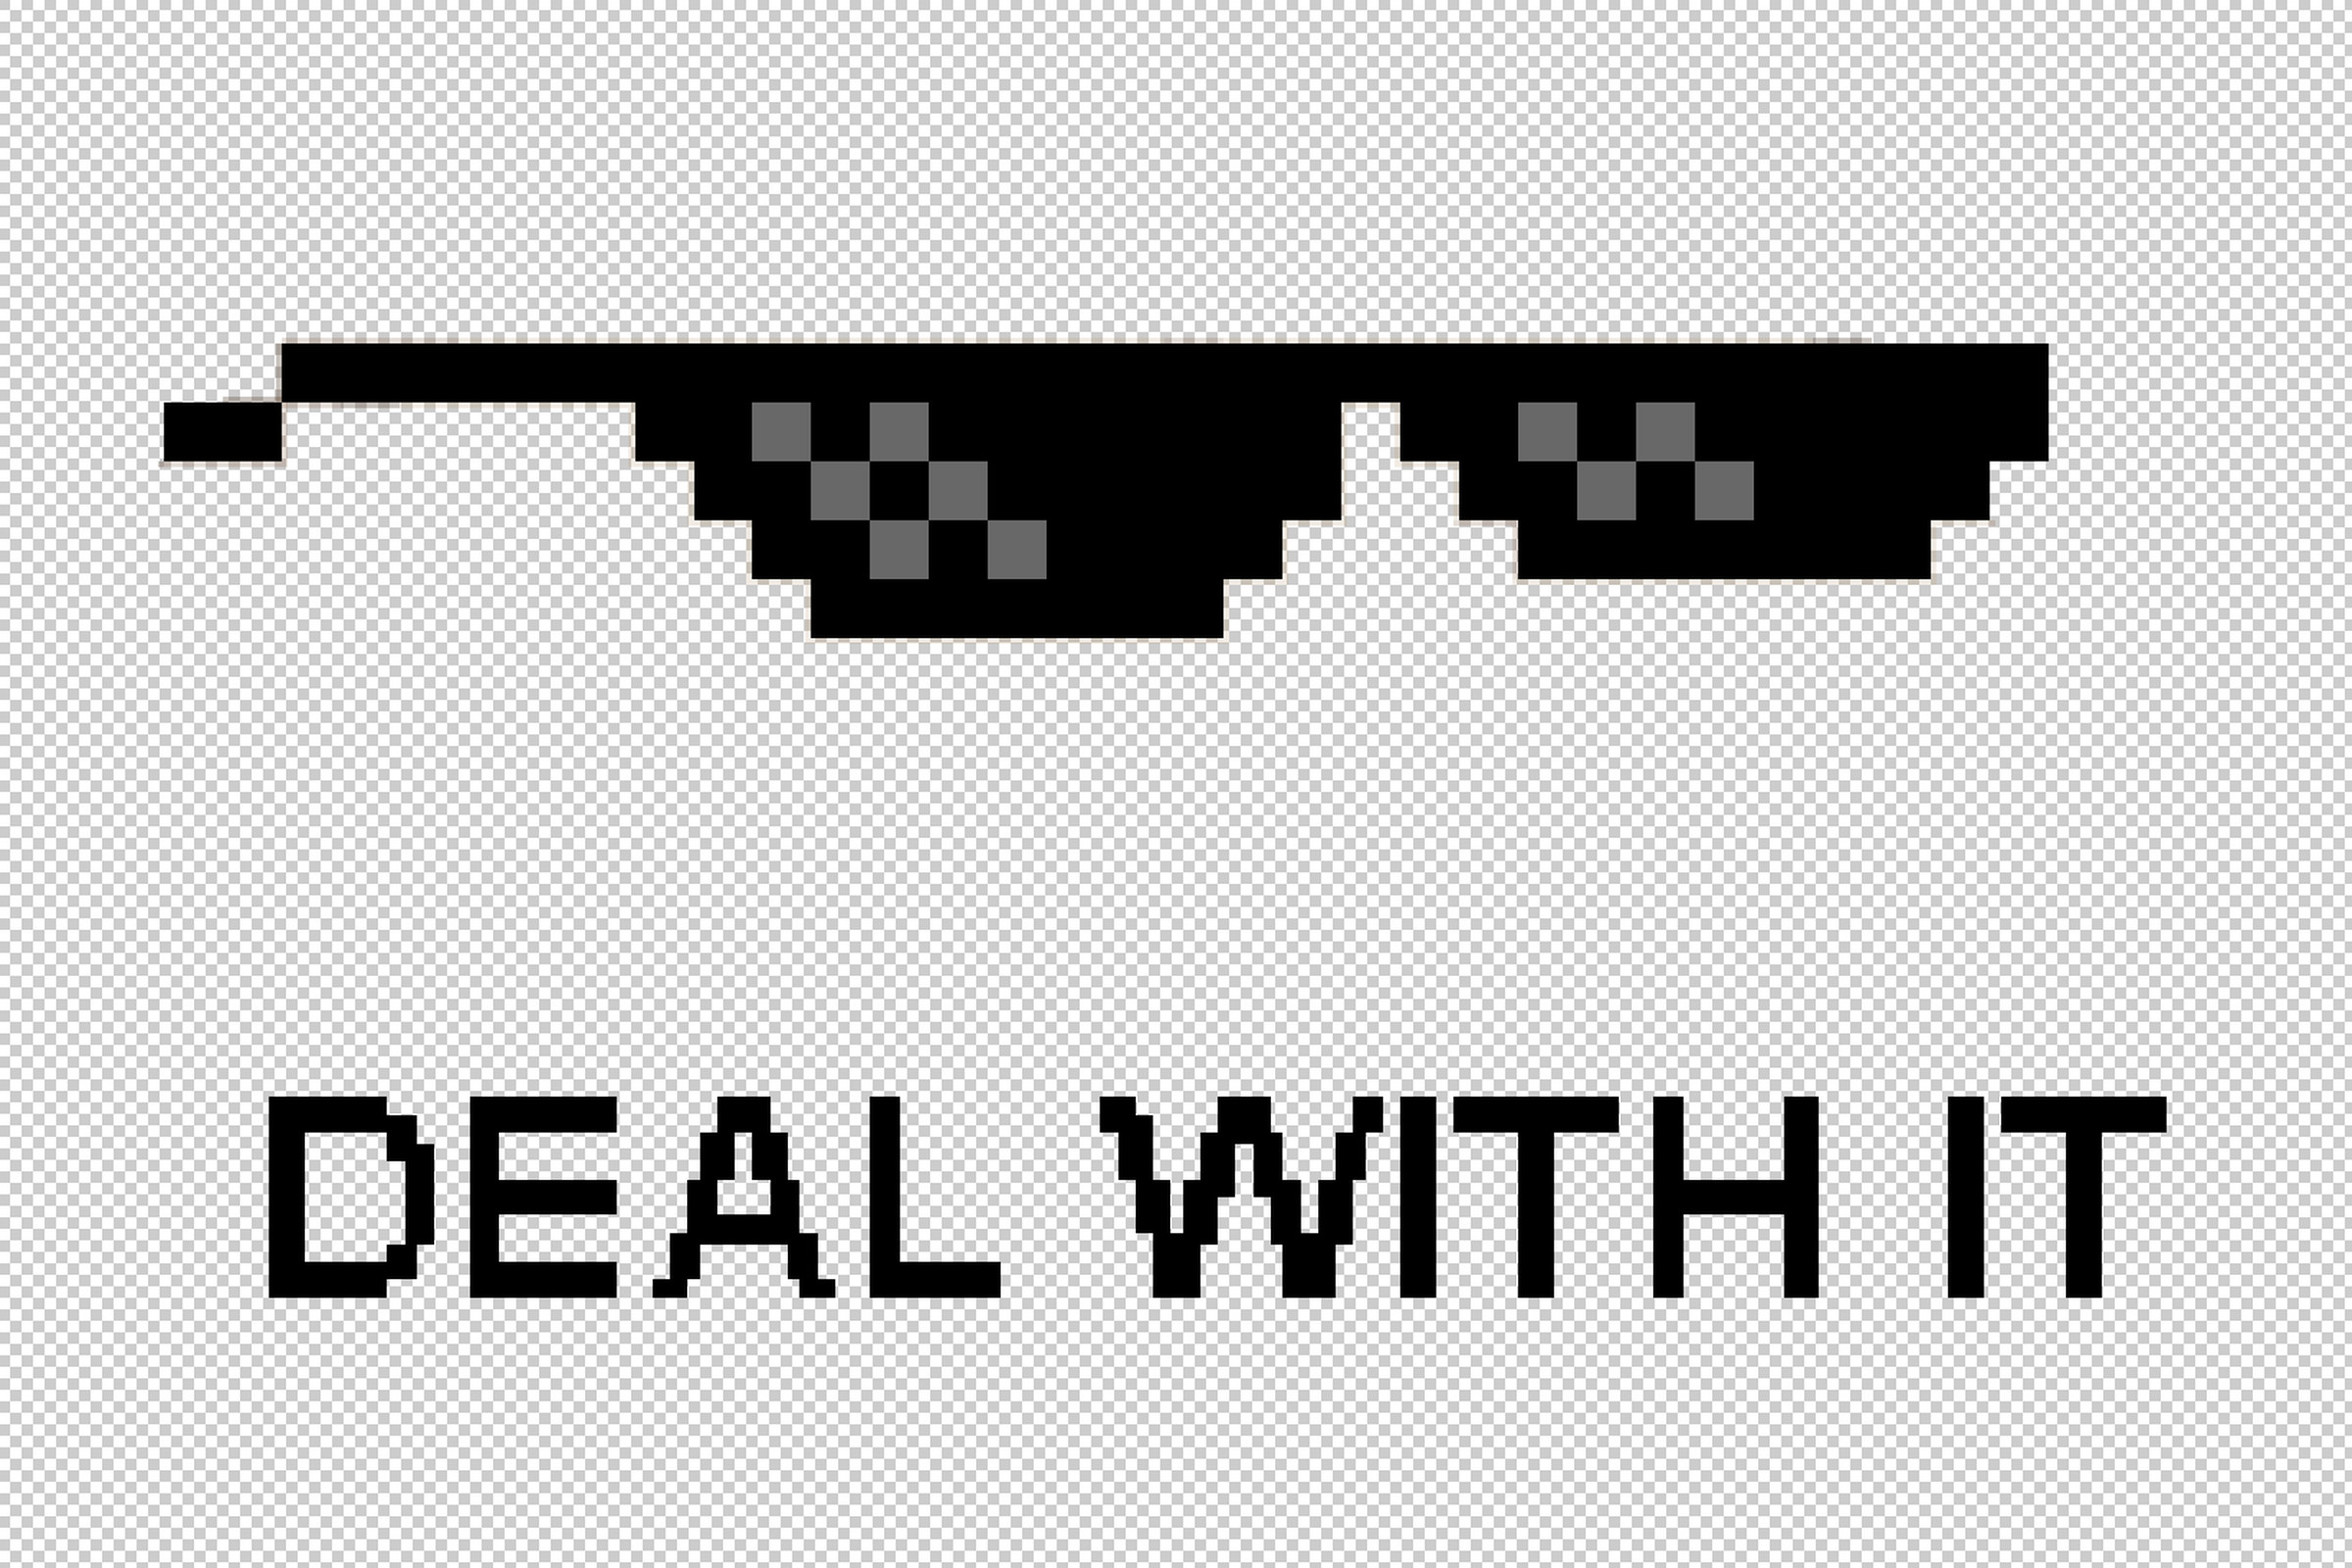 Deal with something. Очки пиксели. Крутые очки. Солнцезащитные очки пиксельные. Распечатка пиксельных очков.